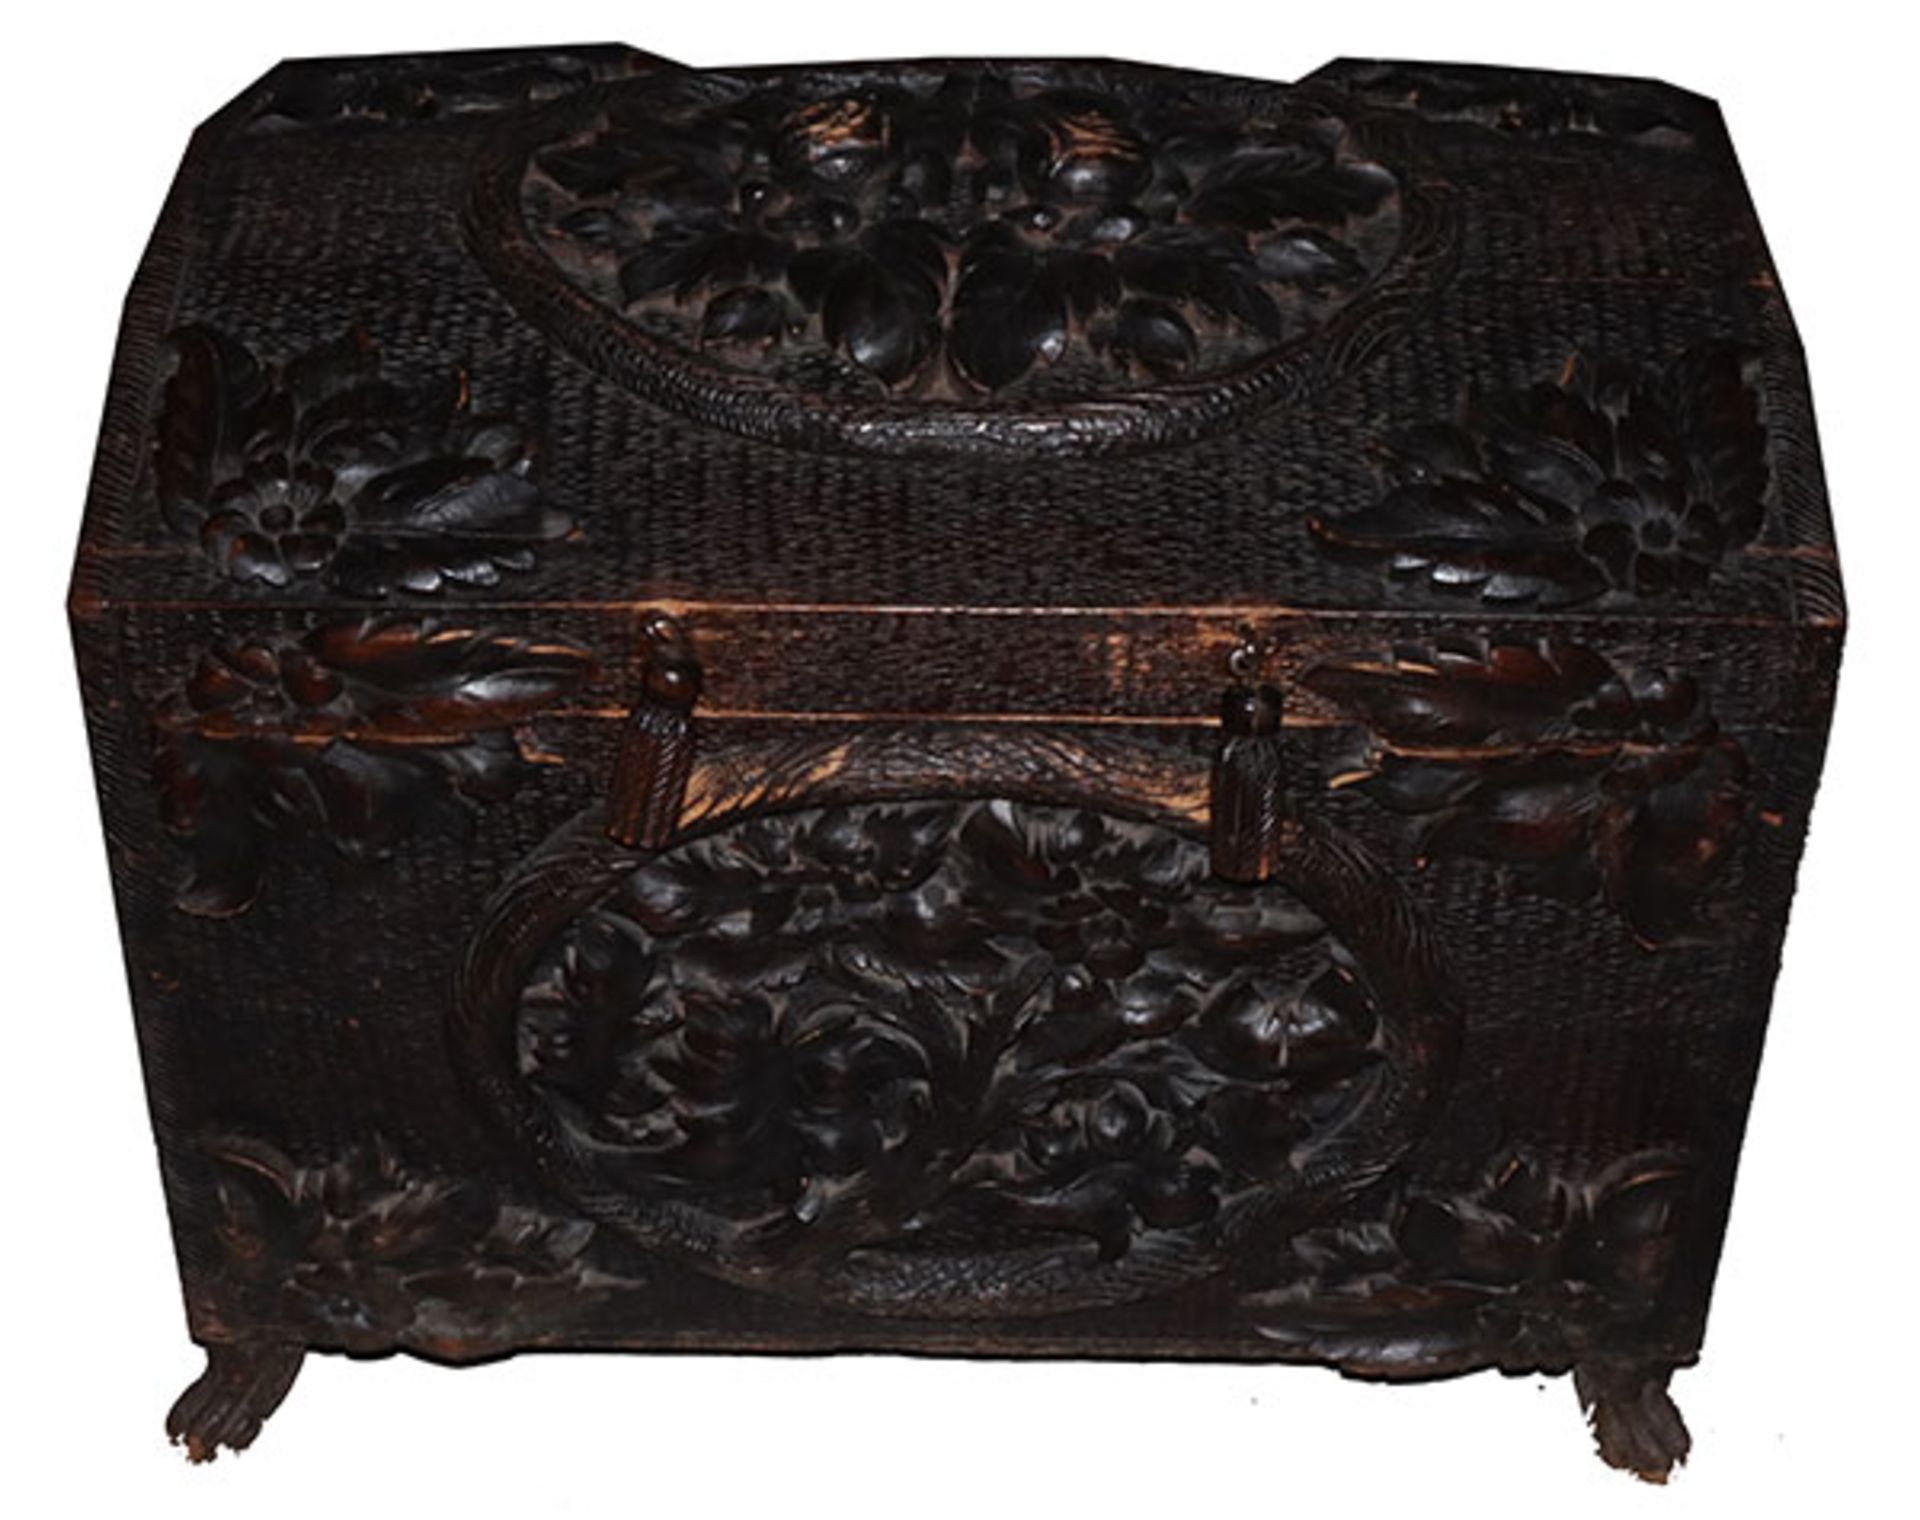 Chinesische Holztruhe mit Reliefschnitzerei, seitliche Handhaben, schwarz bemalt, teils berieben,